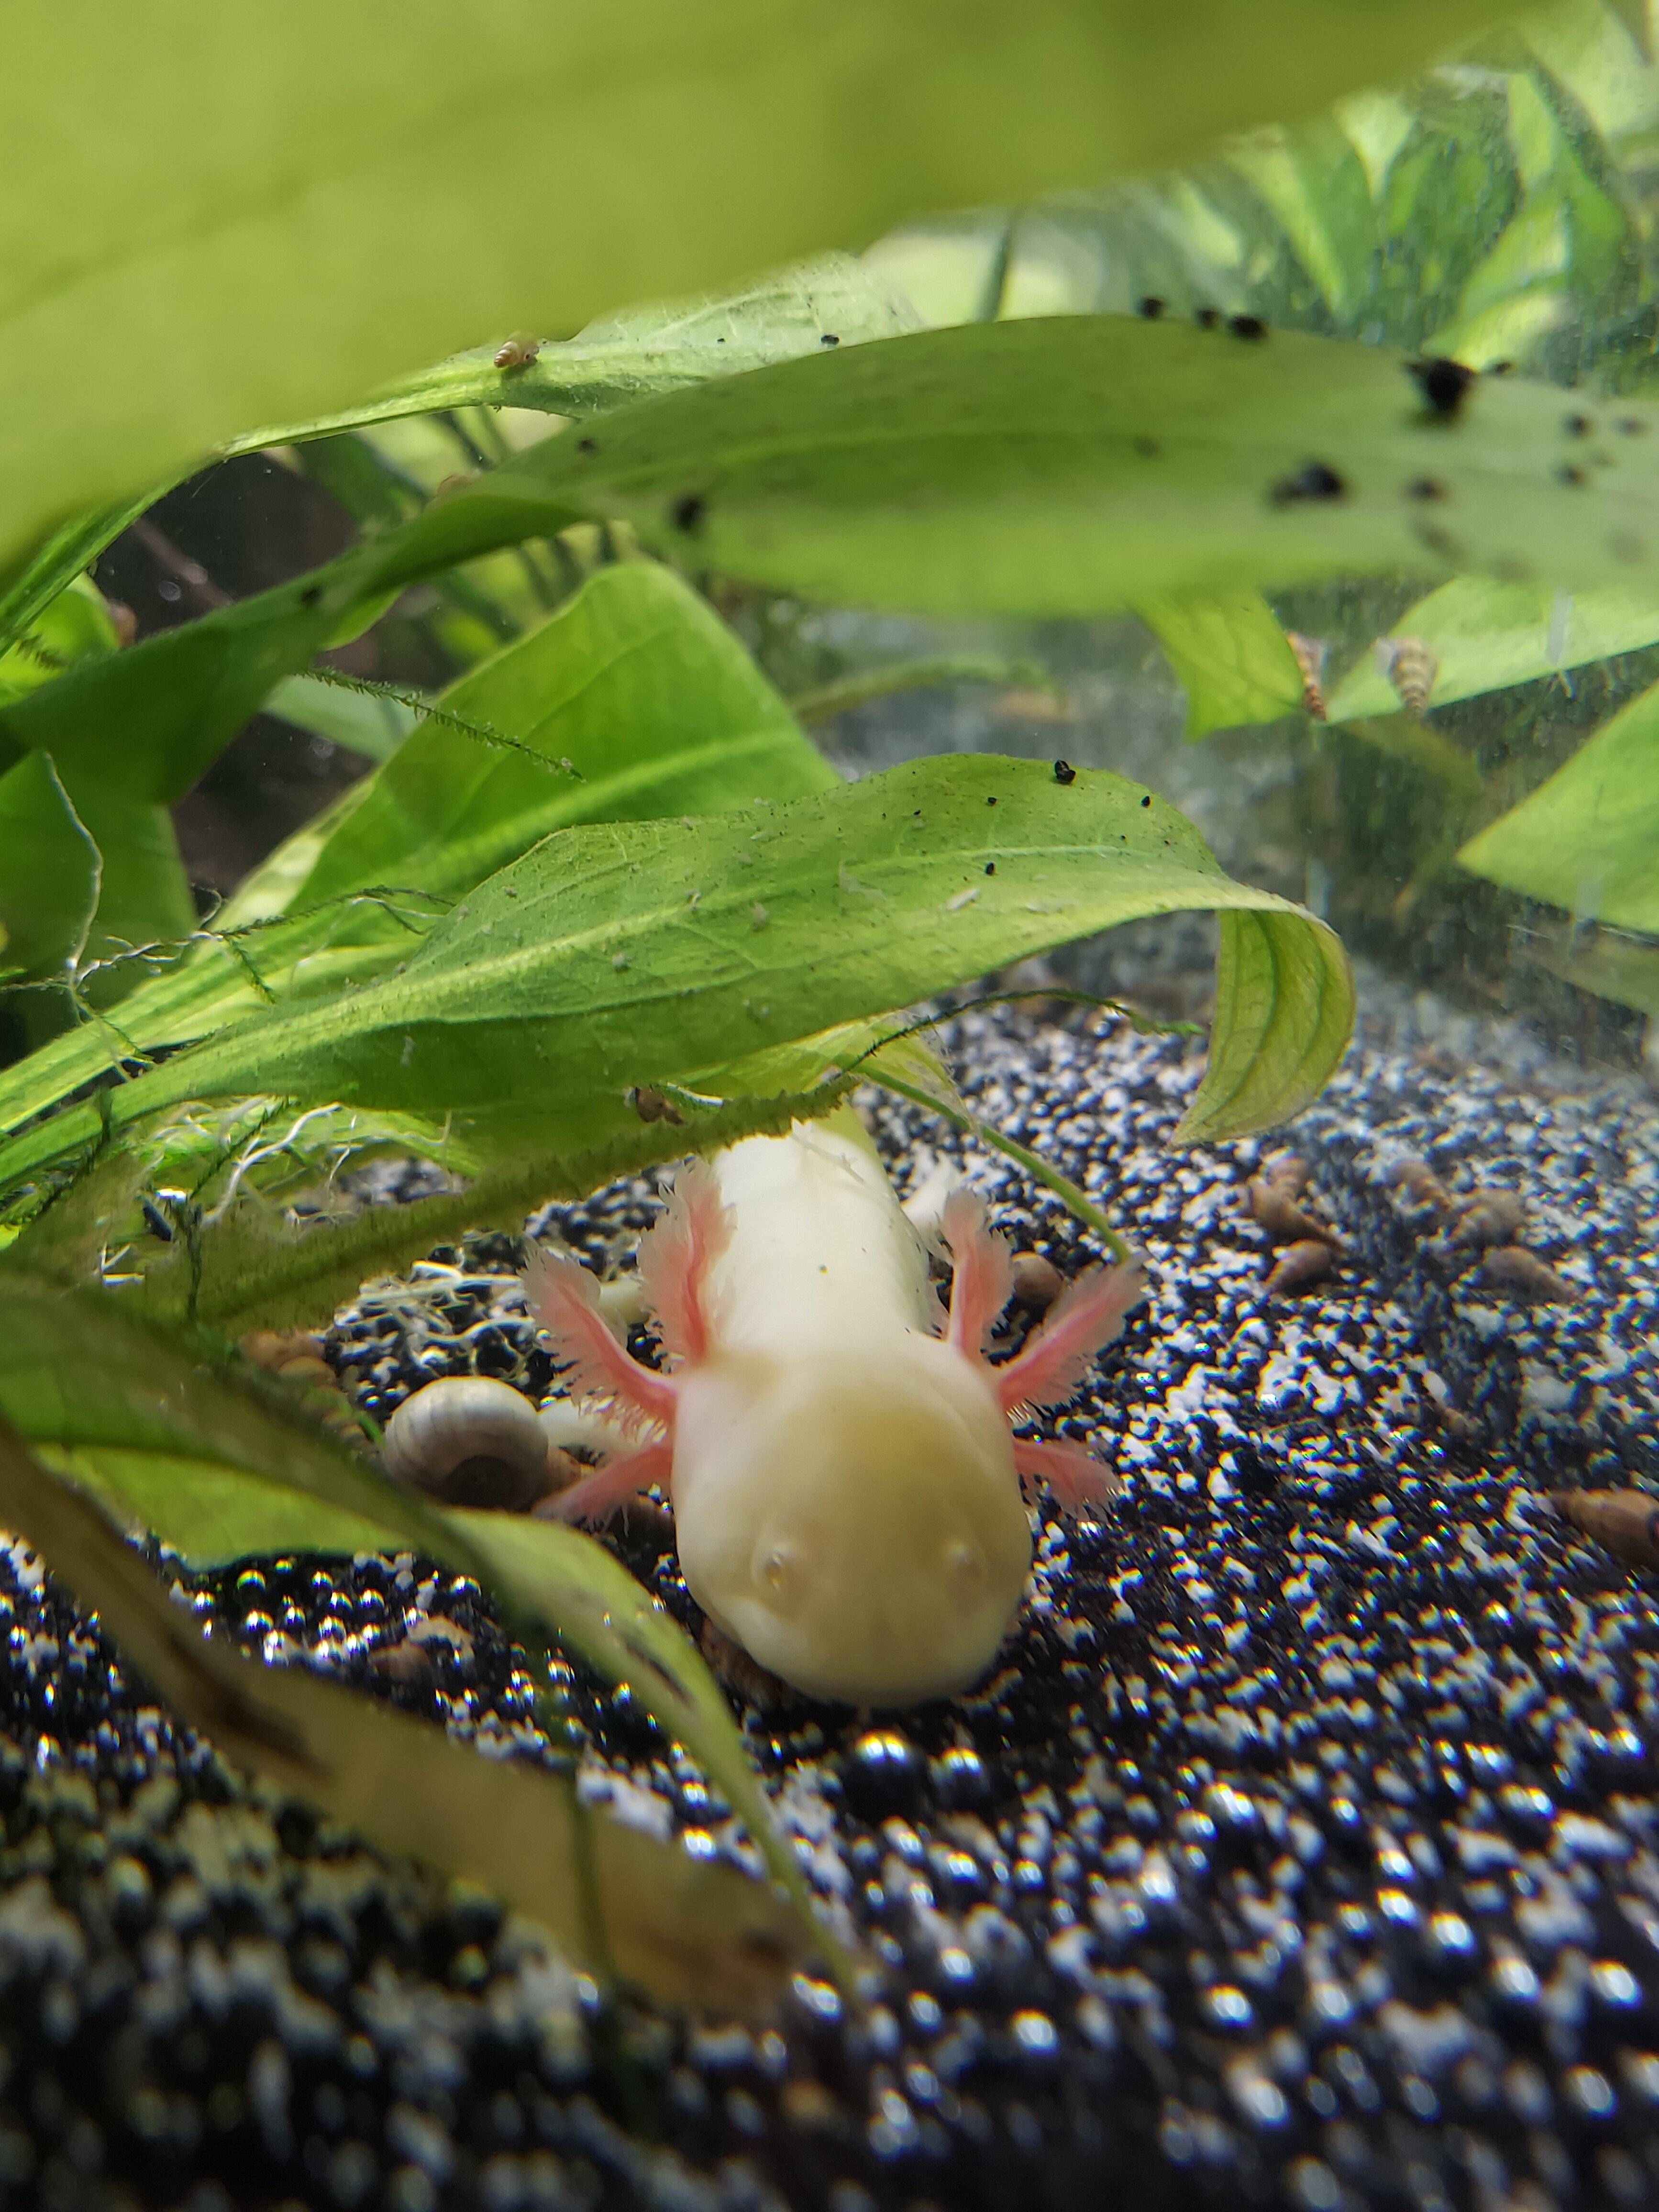 Transparent tank funk?  : Newts and Salamanders Portal